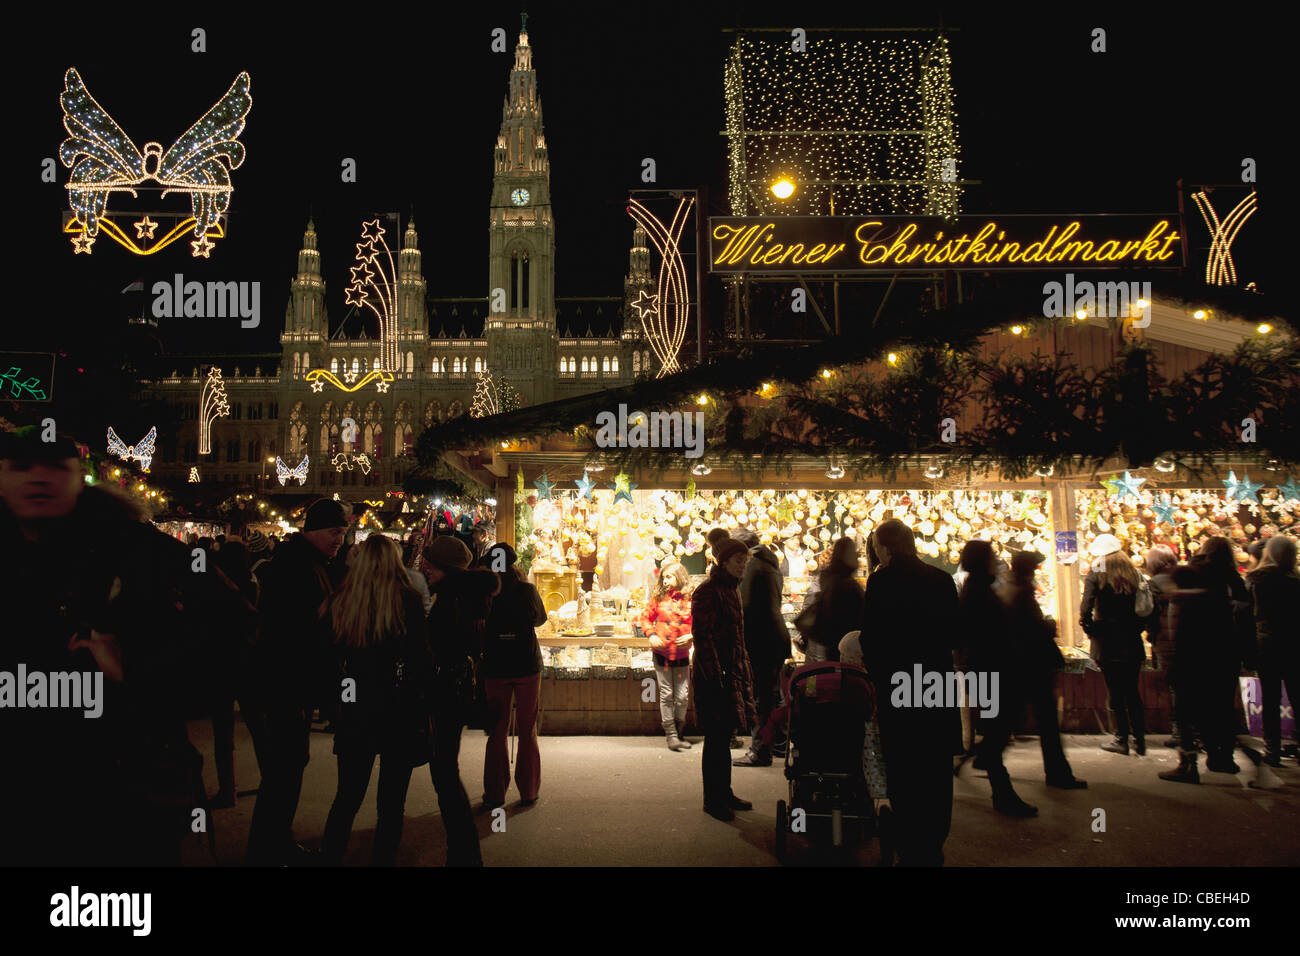 Le luci di Natale illuminano il cielo notturno come le persone si radunano alla Wiener Christkindlmarkt, a Vienna Town Hall in Austria. Foto Stock